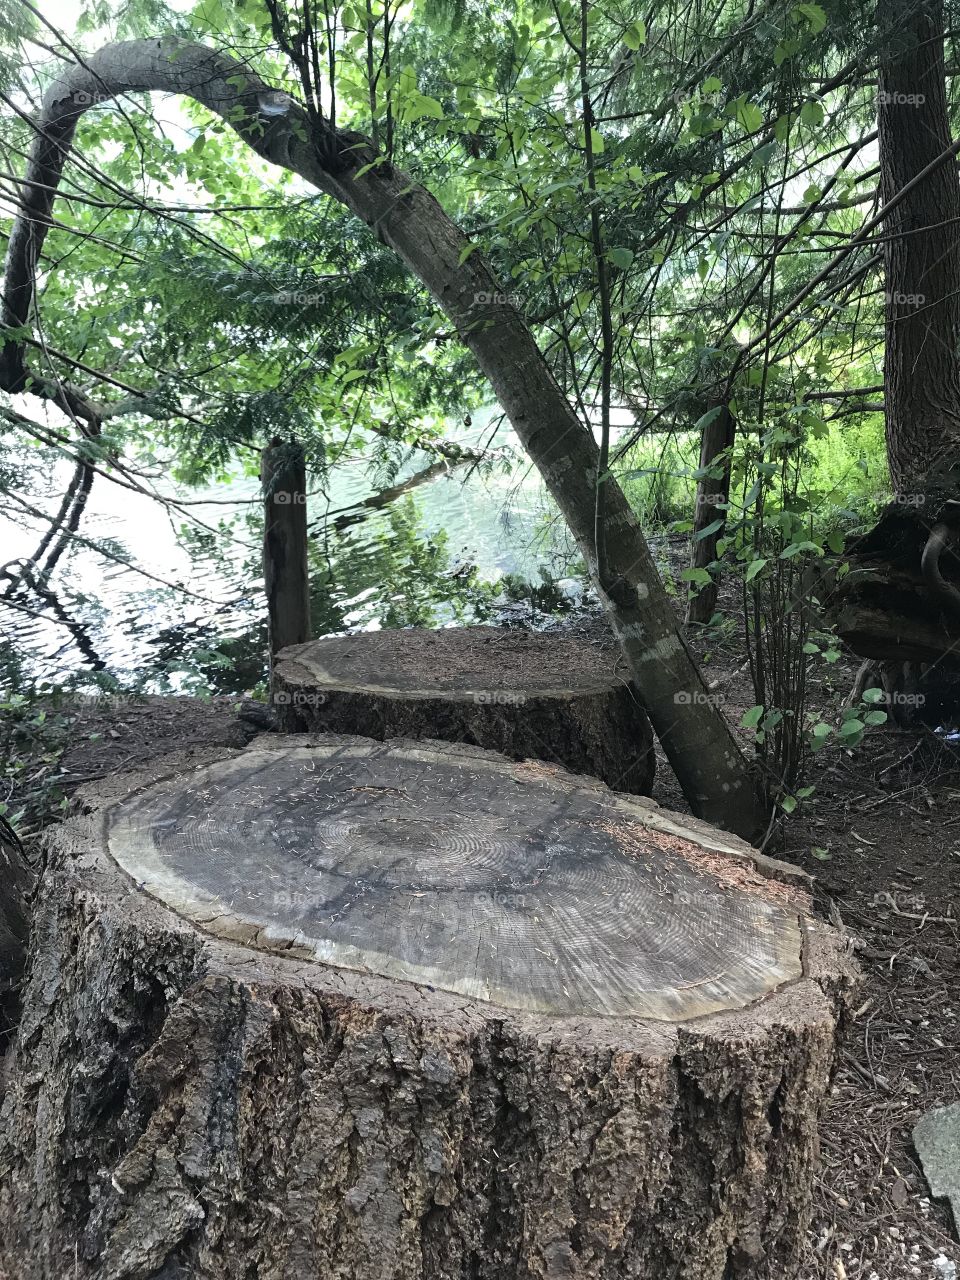 Tree stumps by a lake